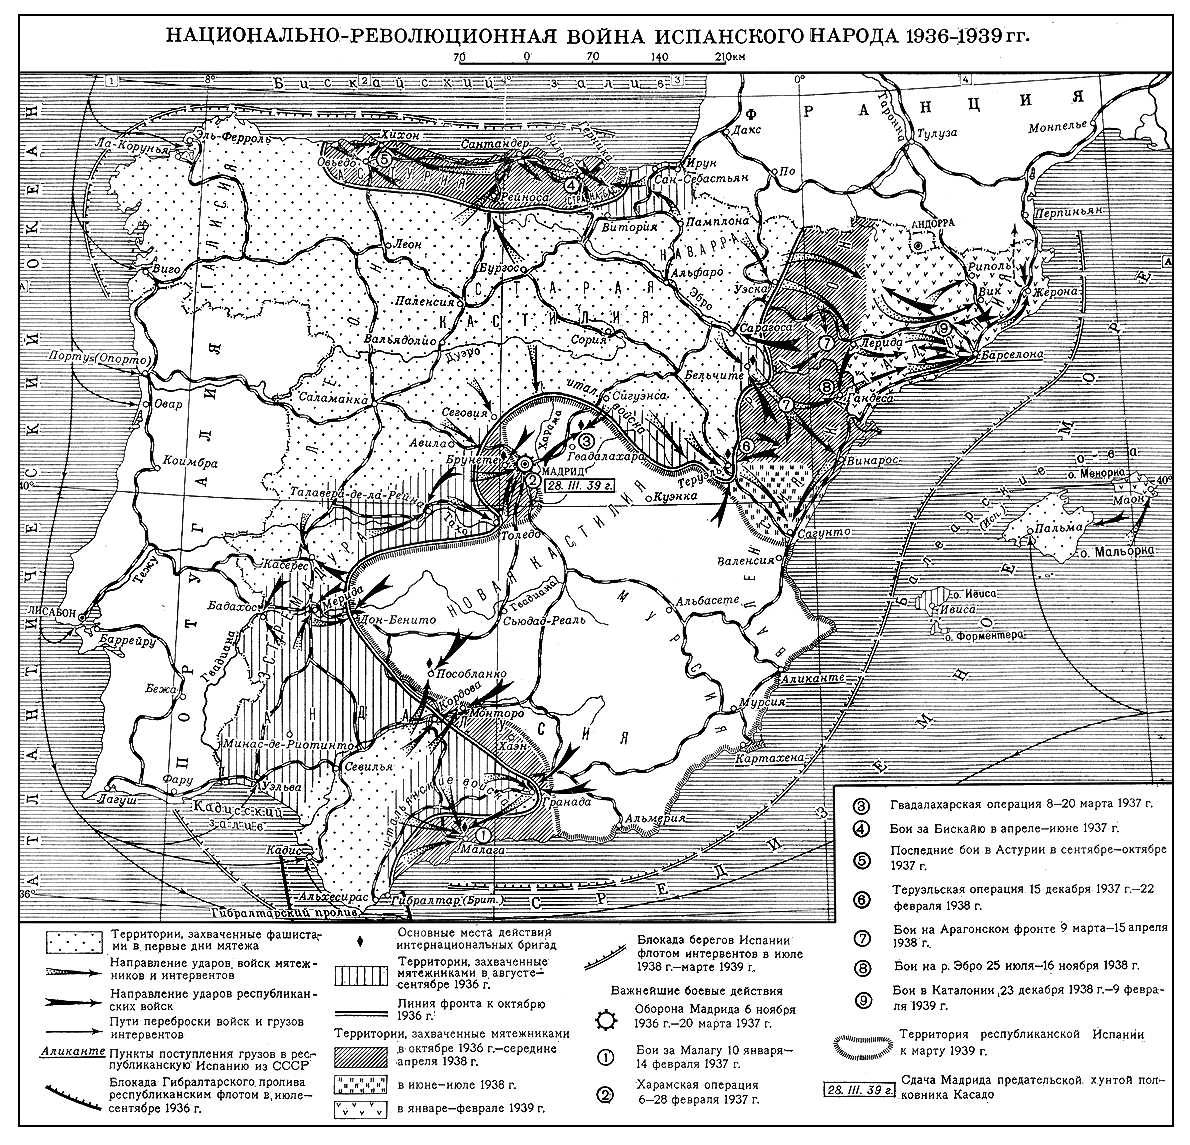 Национально-революционная война 1936-1939 гг. (Испания)